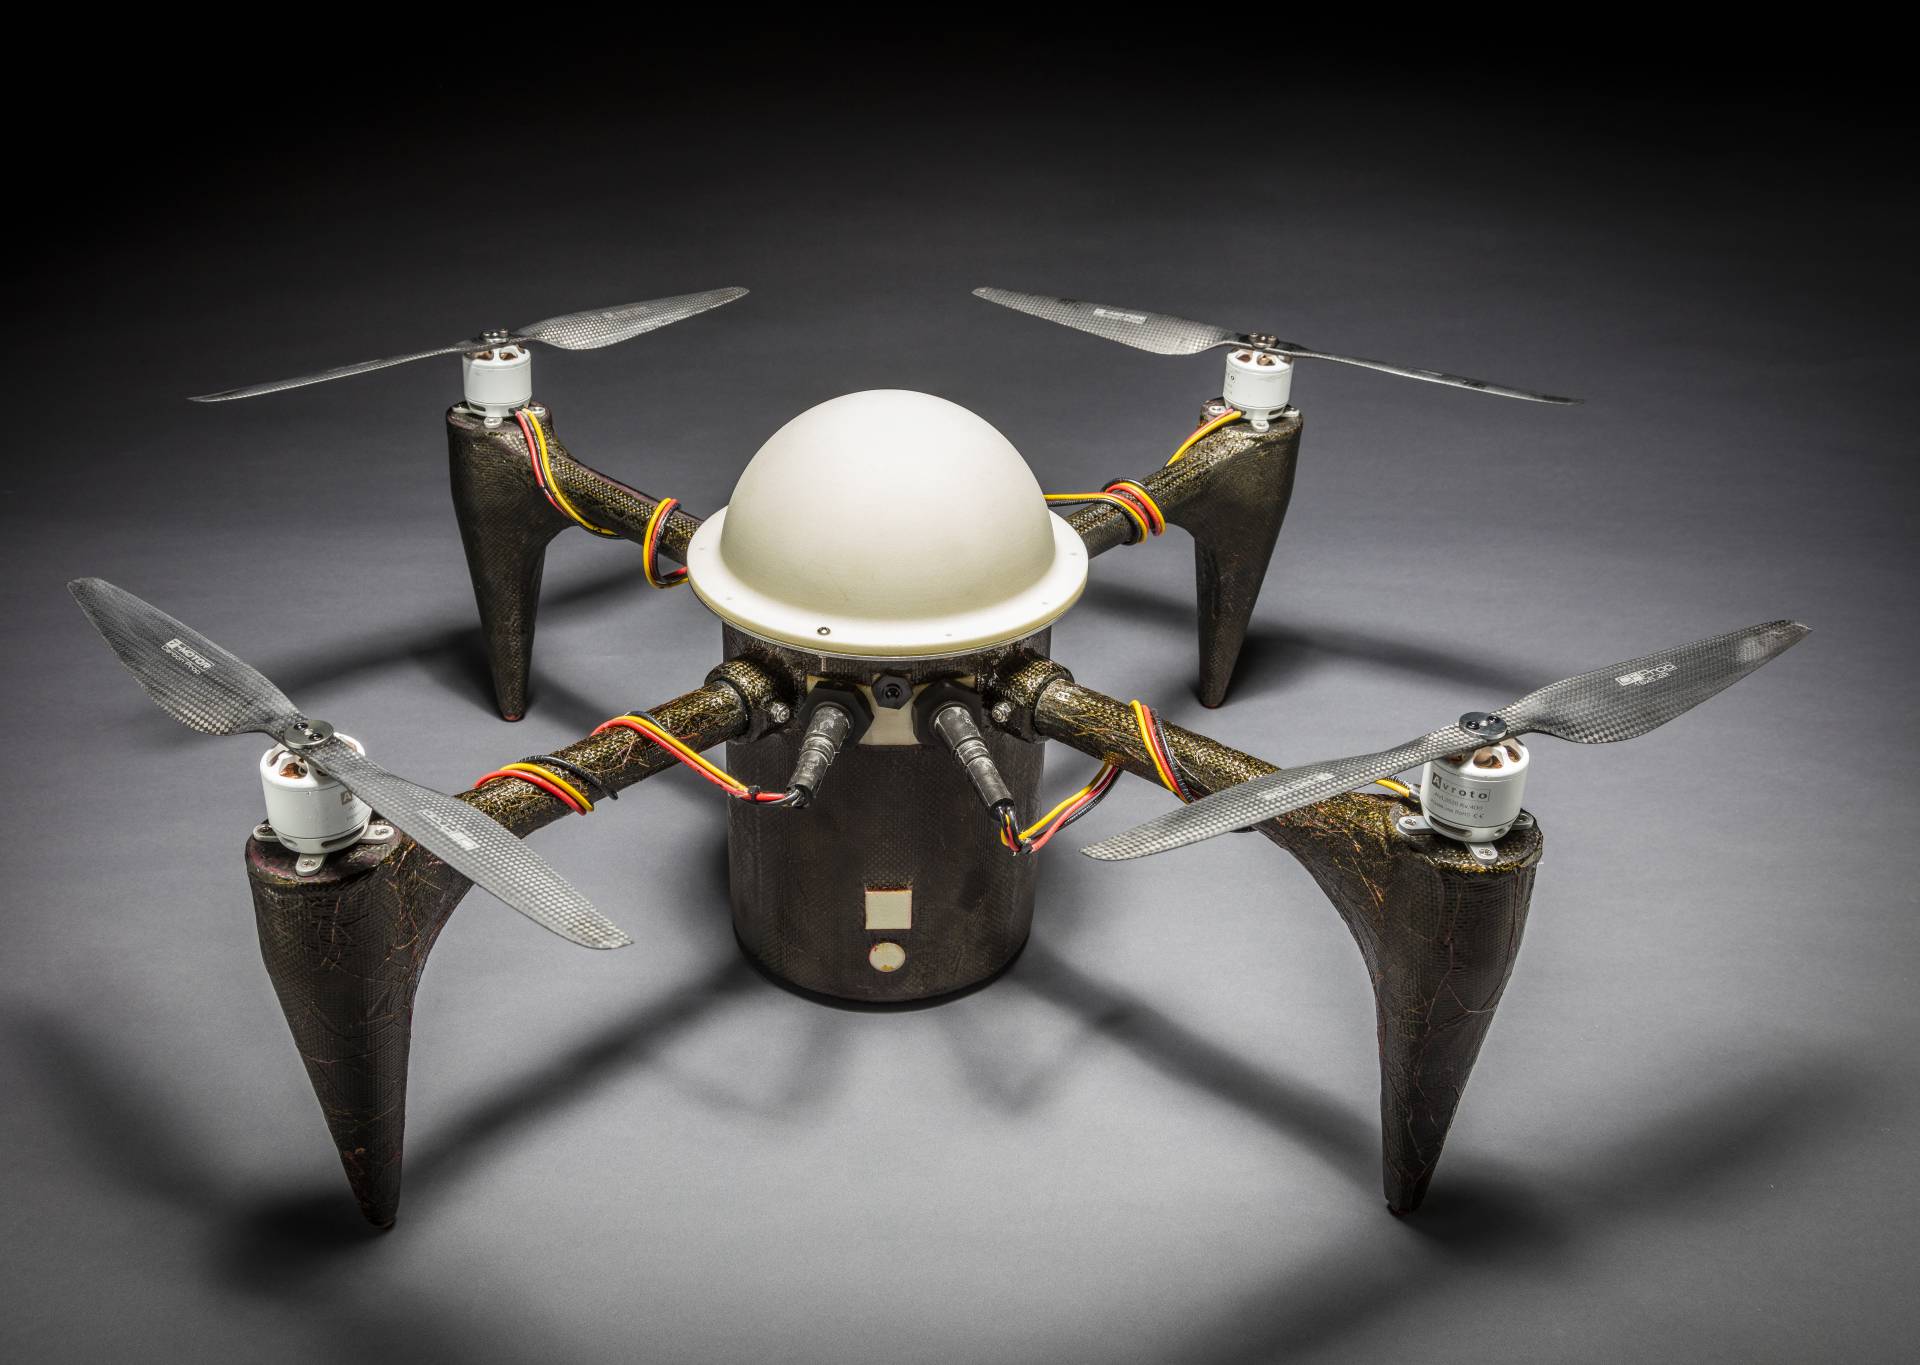 Ovaj leteći dron može ostati mjesecima skriven ispod vode